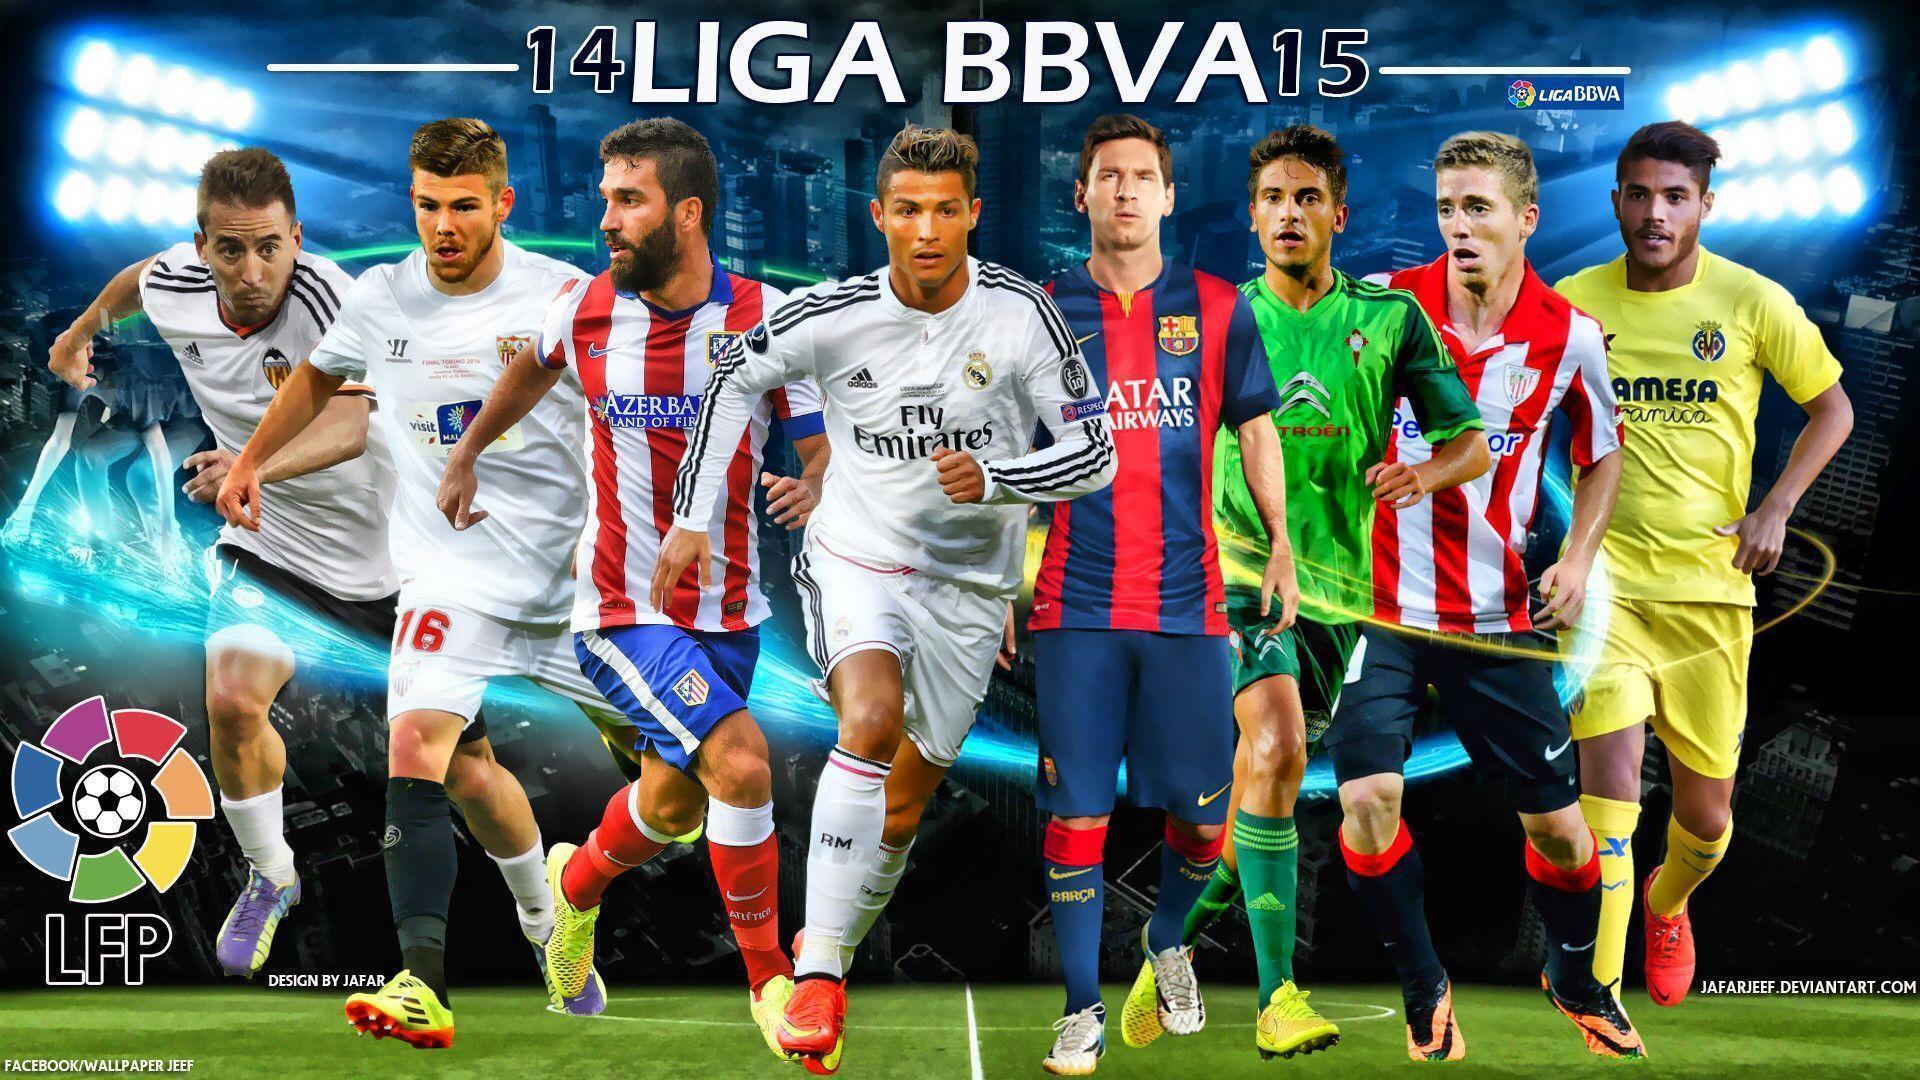 Liga BBVA 2014 2015 Football Stars Wallpaper Wide Or HD. Sports